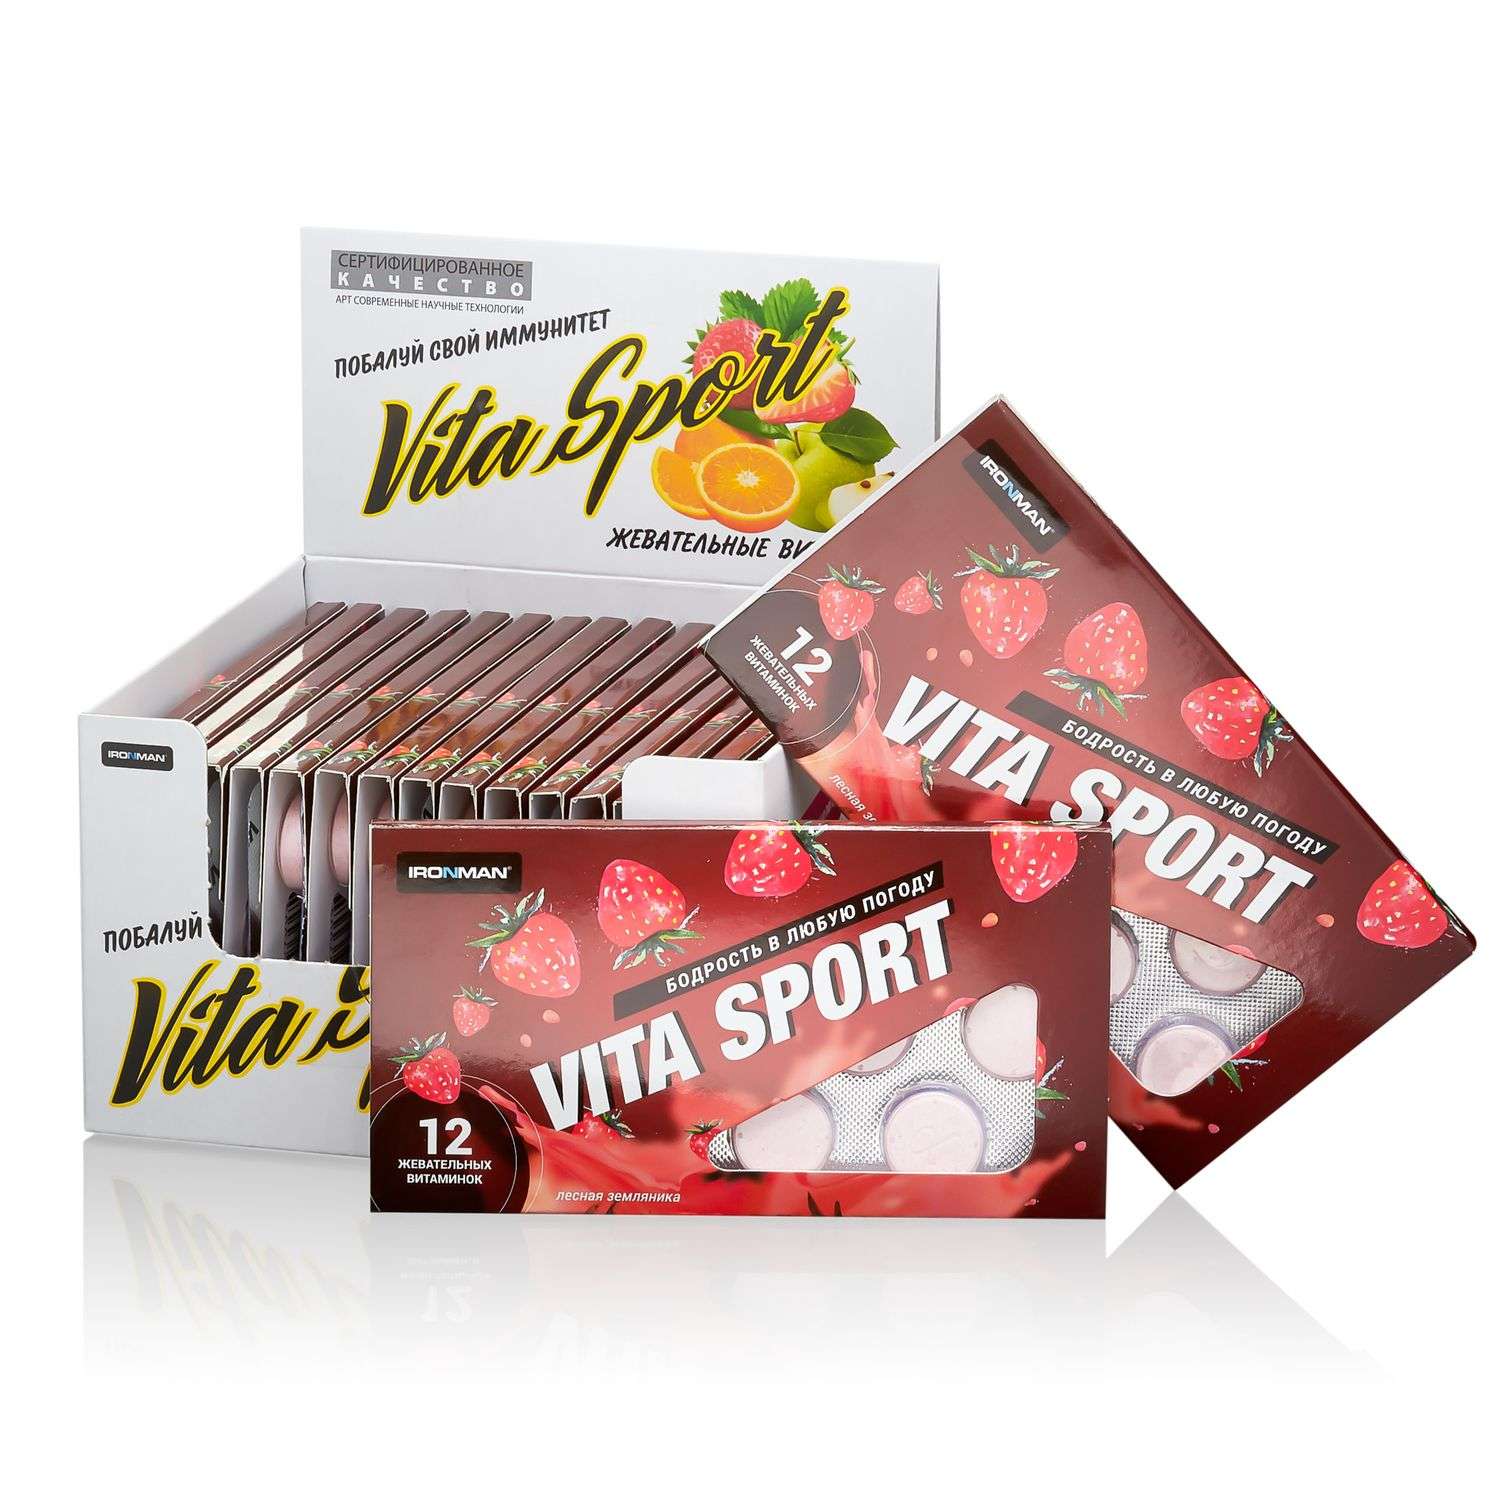 Продукт пищевой IronMan Vita Sport с янтарной кислотой земляника 12таблеток - фото 2